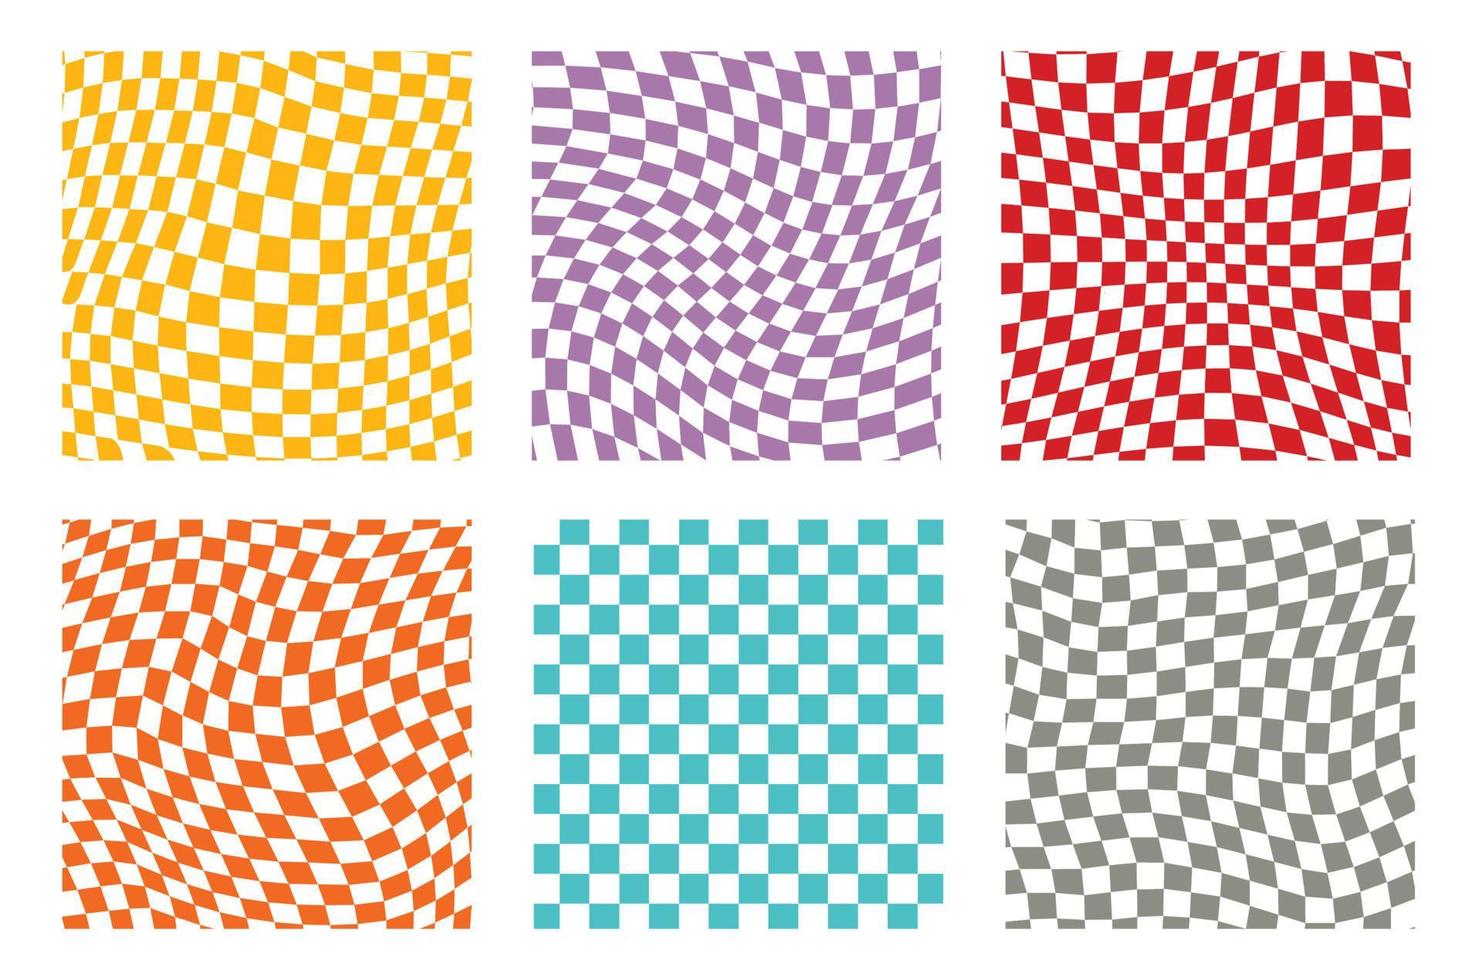 groovy retro patroonachtergrond in psychedelische geruite achtergrondstijl. een schaakbord in een minimalistisch abstract ontwerp met een esthetische sfeer uit de jaren 60 en 70. hippie-stijl y2k. funky print vectorillustratie vector